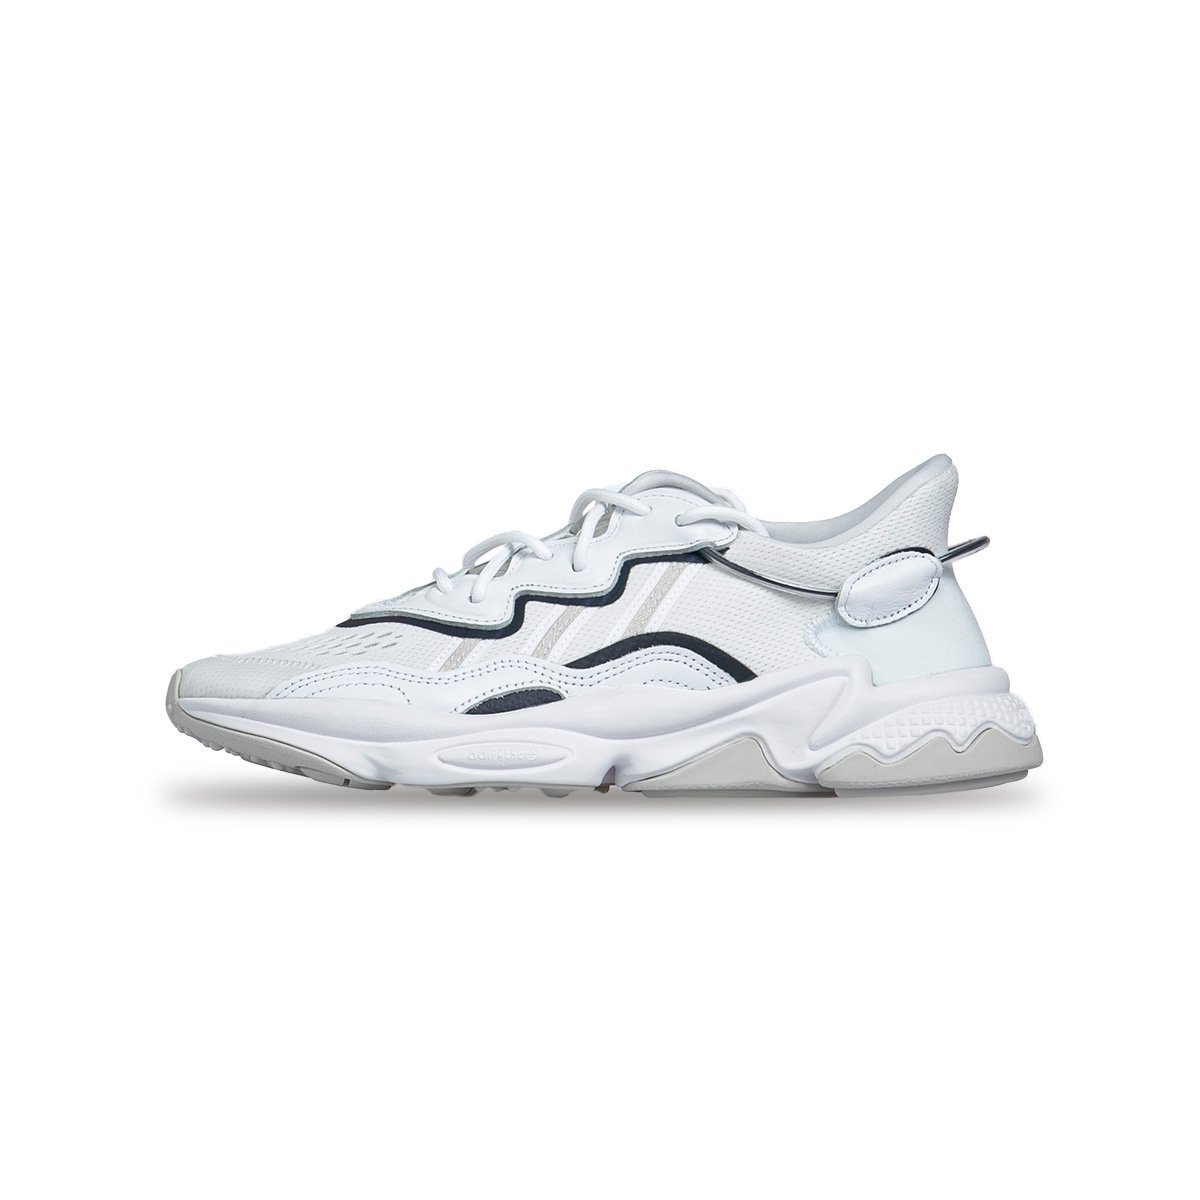 adidas ozweego white and grey